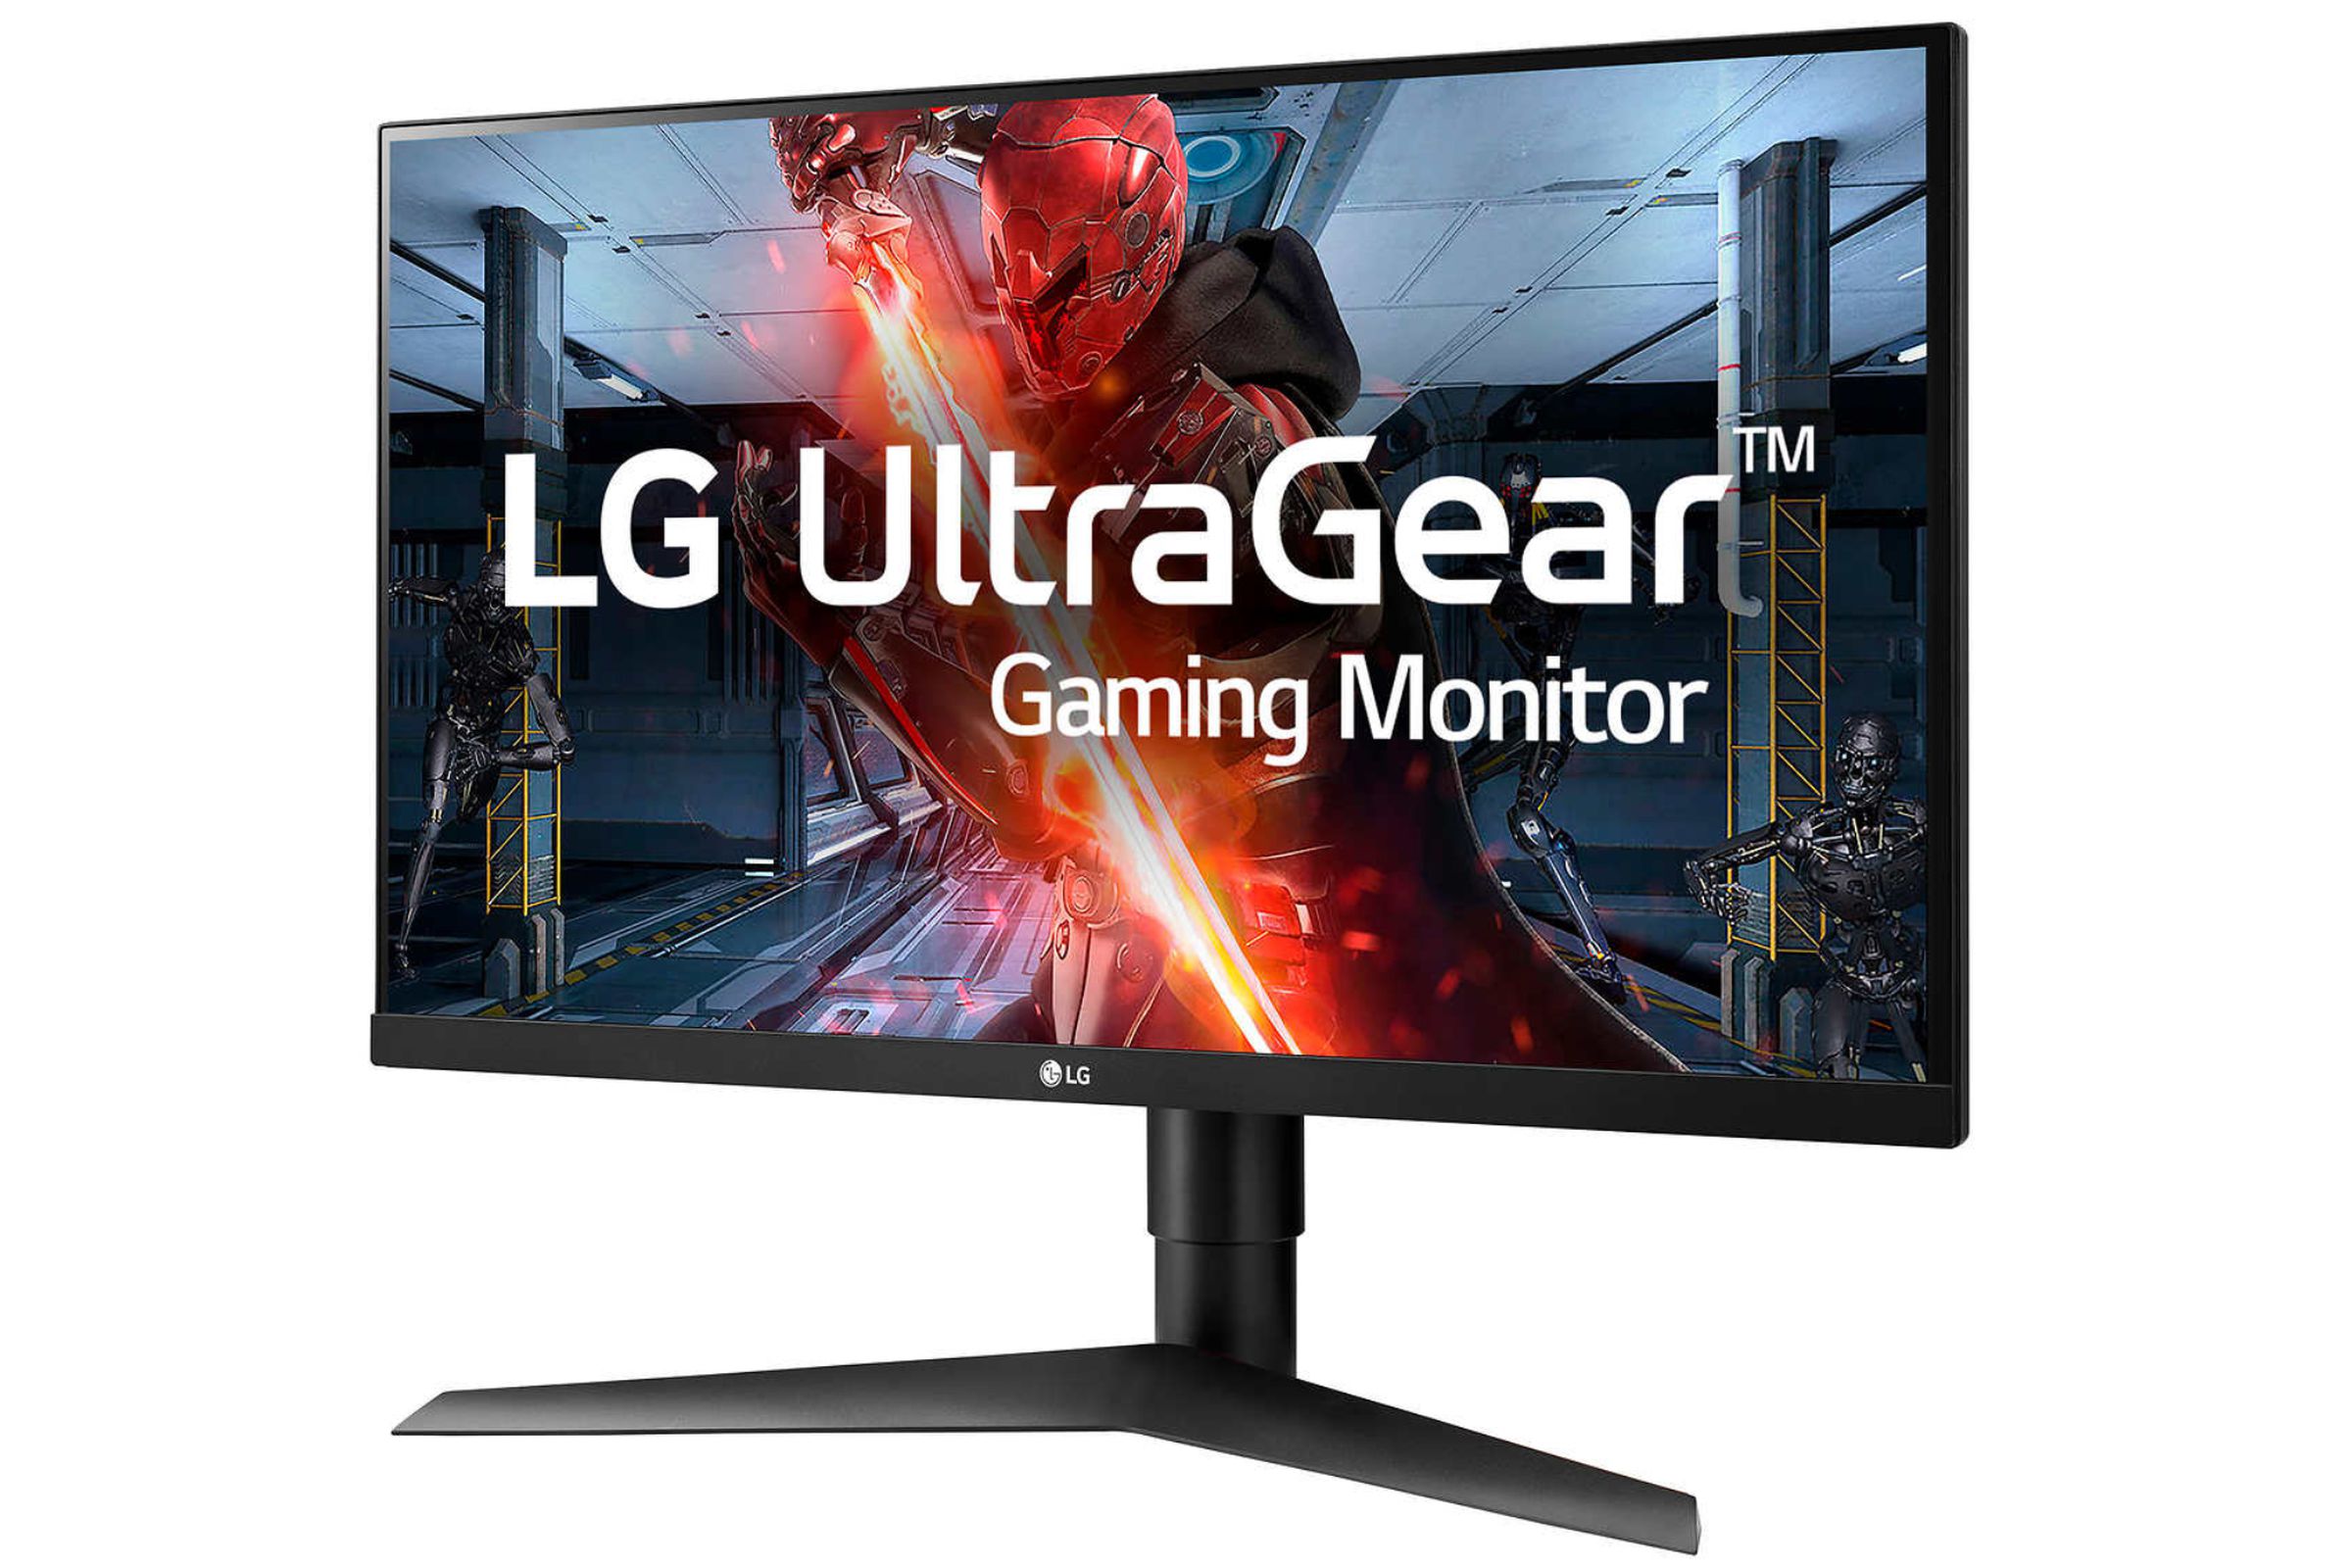 LG 27-inch gaming monitor